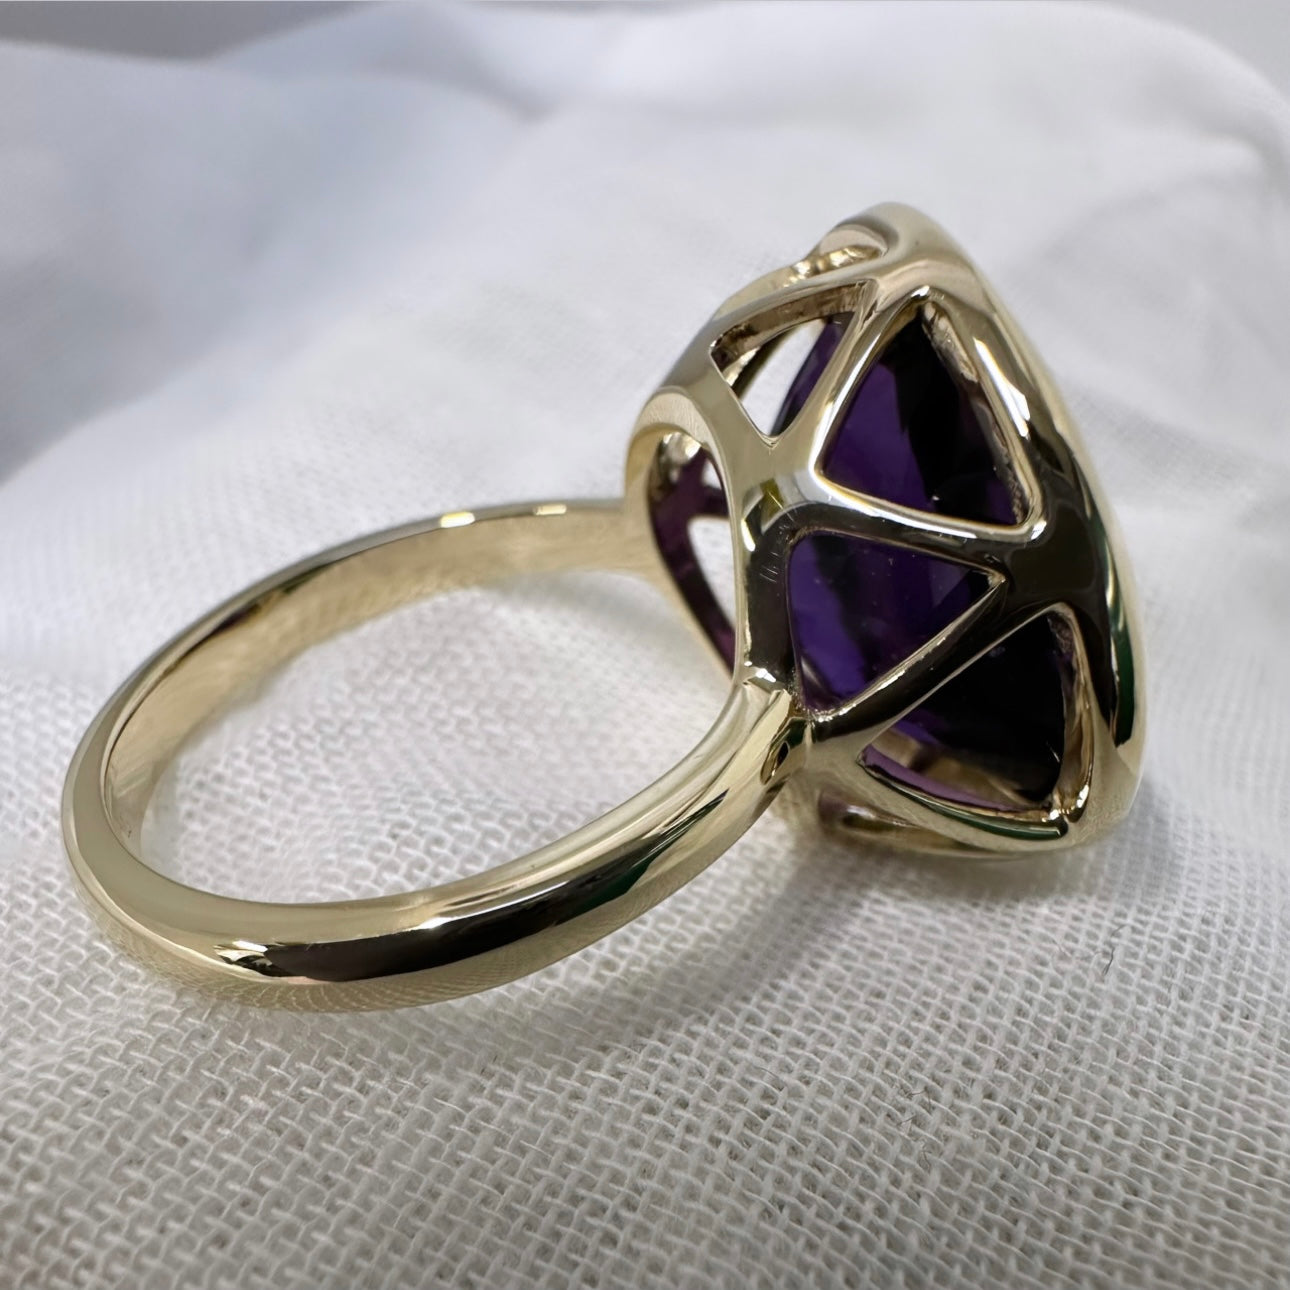 ‘Paloma’ ring